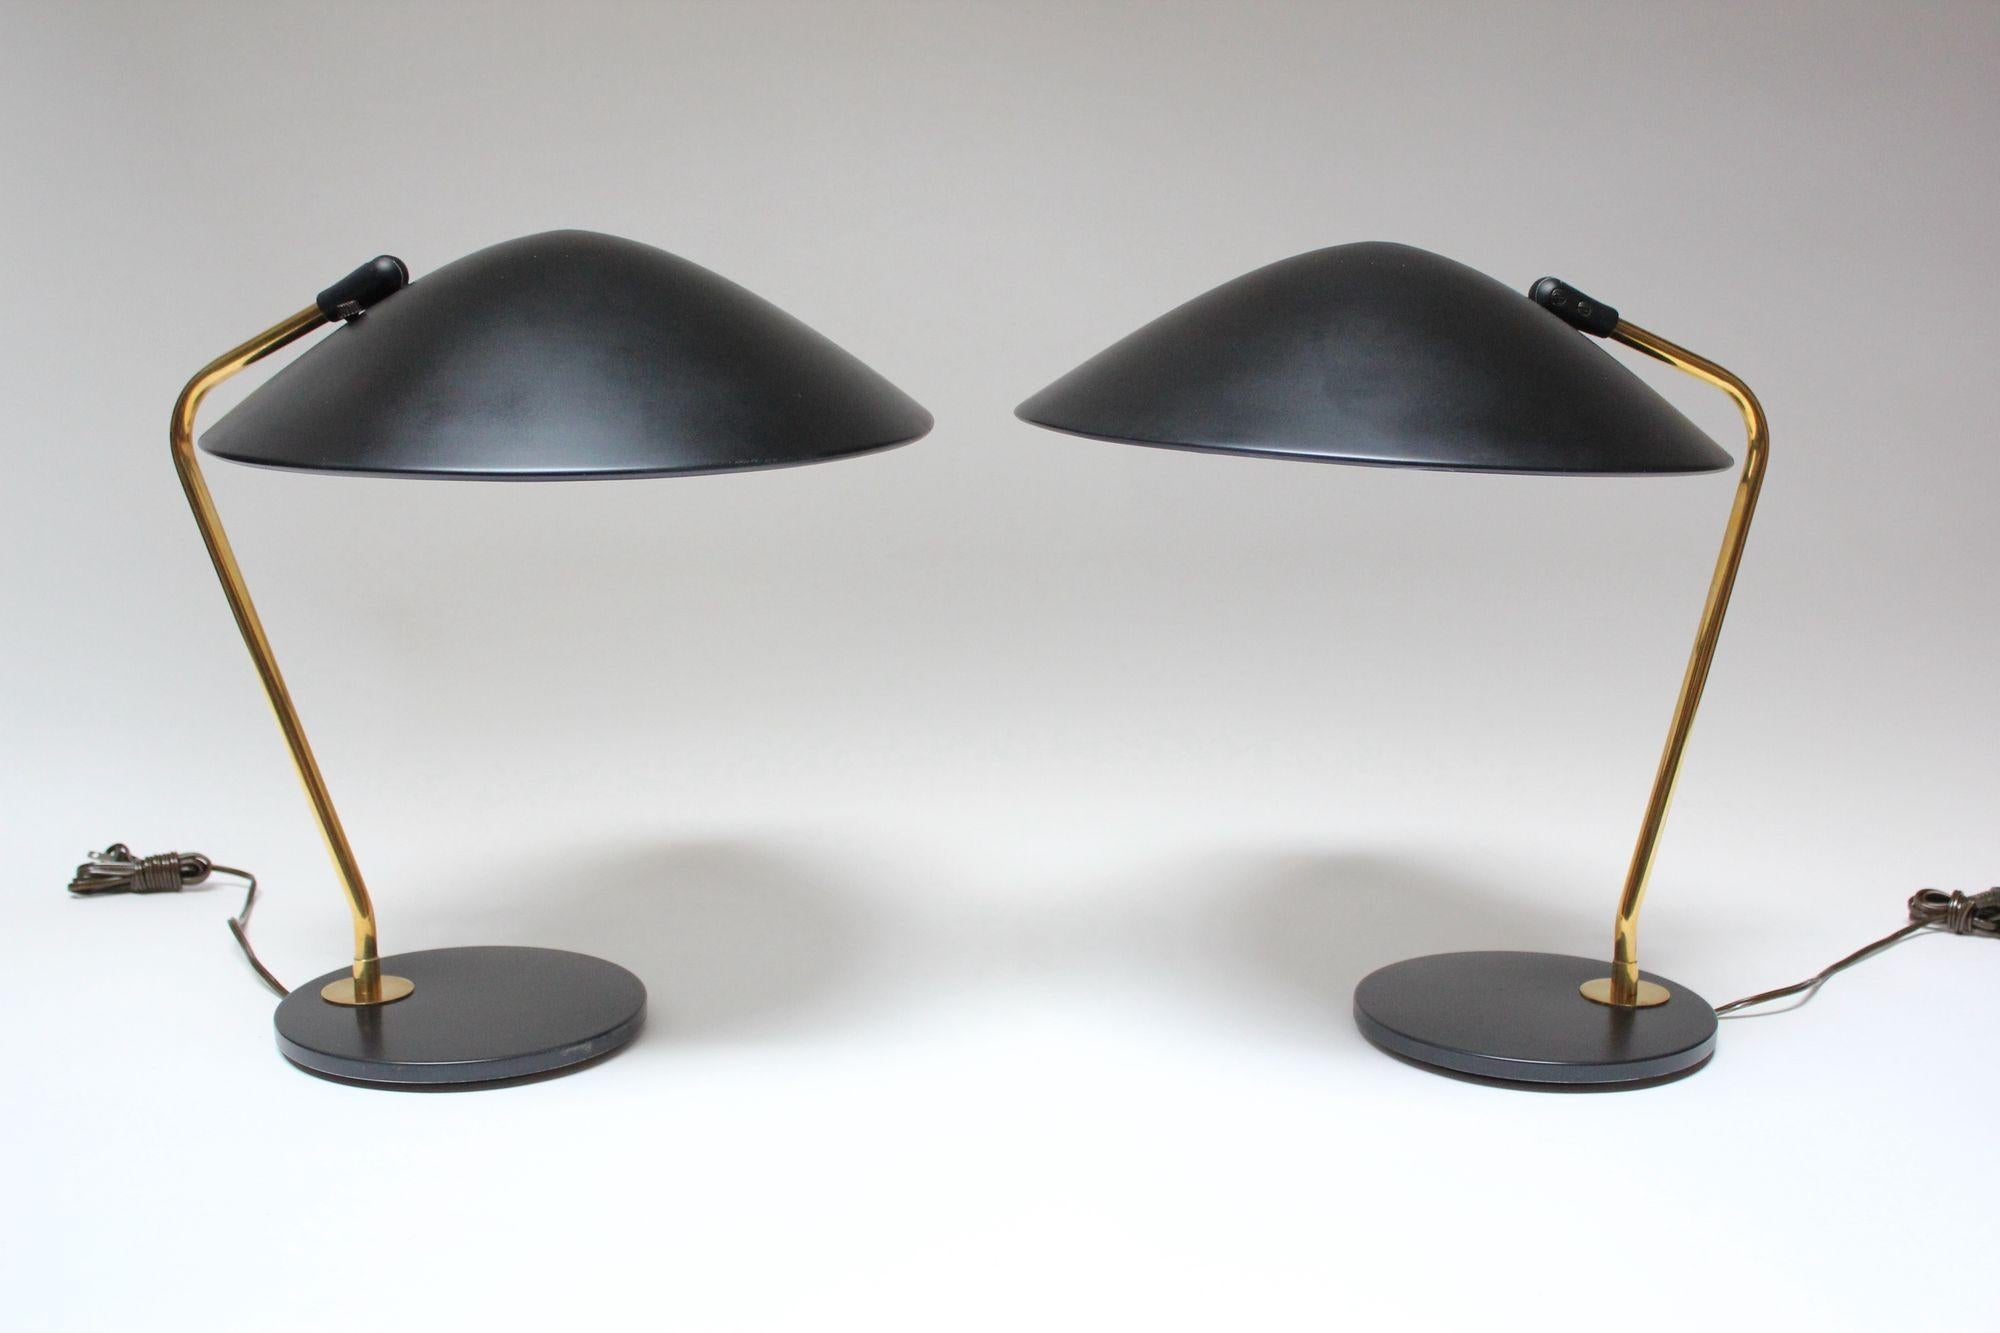 Paire de lampes de table conçues par Gerald Thurston pour Lightolier, composées d'abat-jours surdimensionnés, entièrement réglables, en métal noir et de bases rondes correspondantes avec des tiges en laiton (vers les années 1950, USA).
La peinture